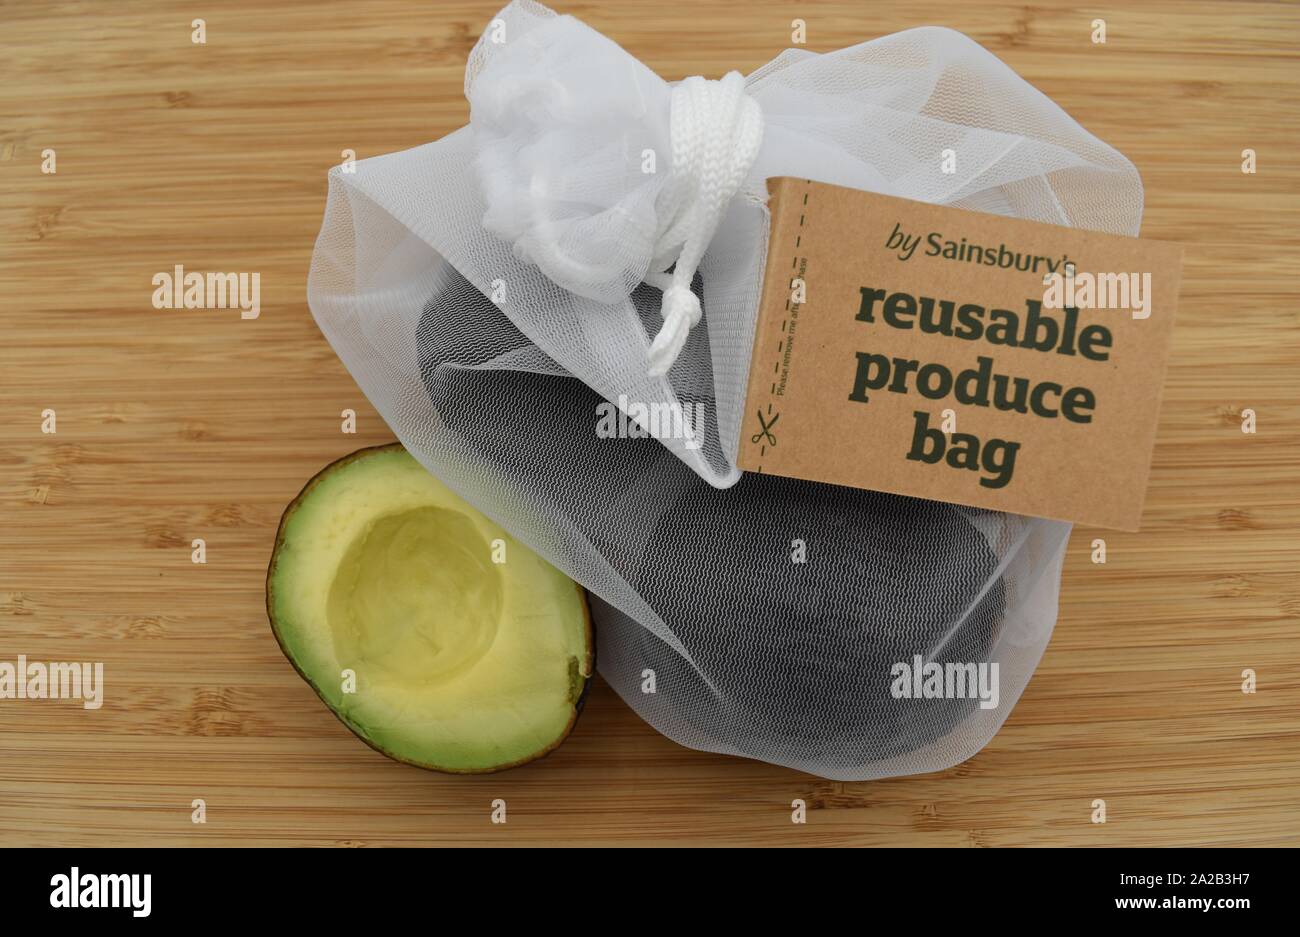 Sainsbury's riutilizzabili per produrre in borsa. Sainsbury's hanno sostituito i sacchetti di plastica con questa borsa a cordoncino realizzato da 100% di bottiglie di plastica riciclate. Foto Stock